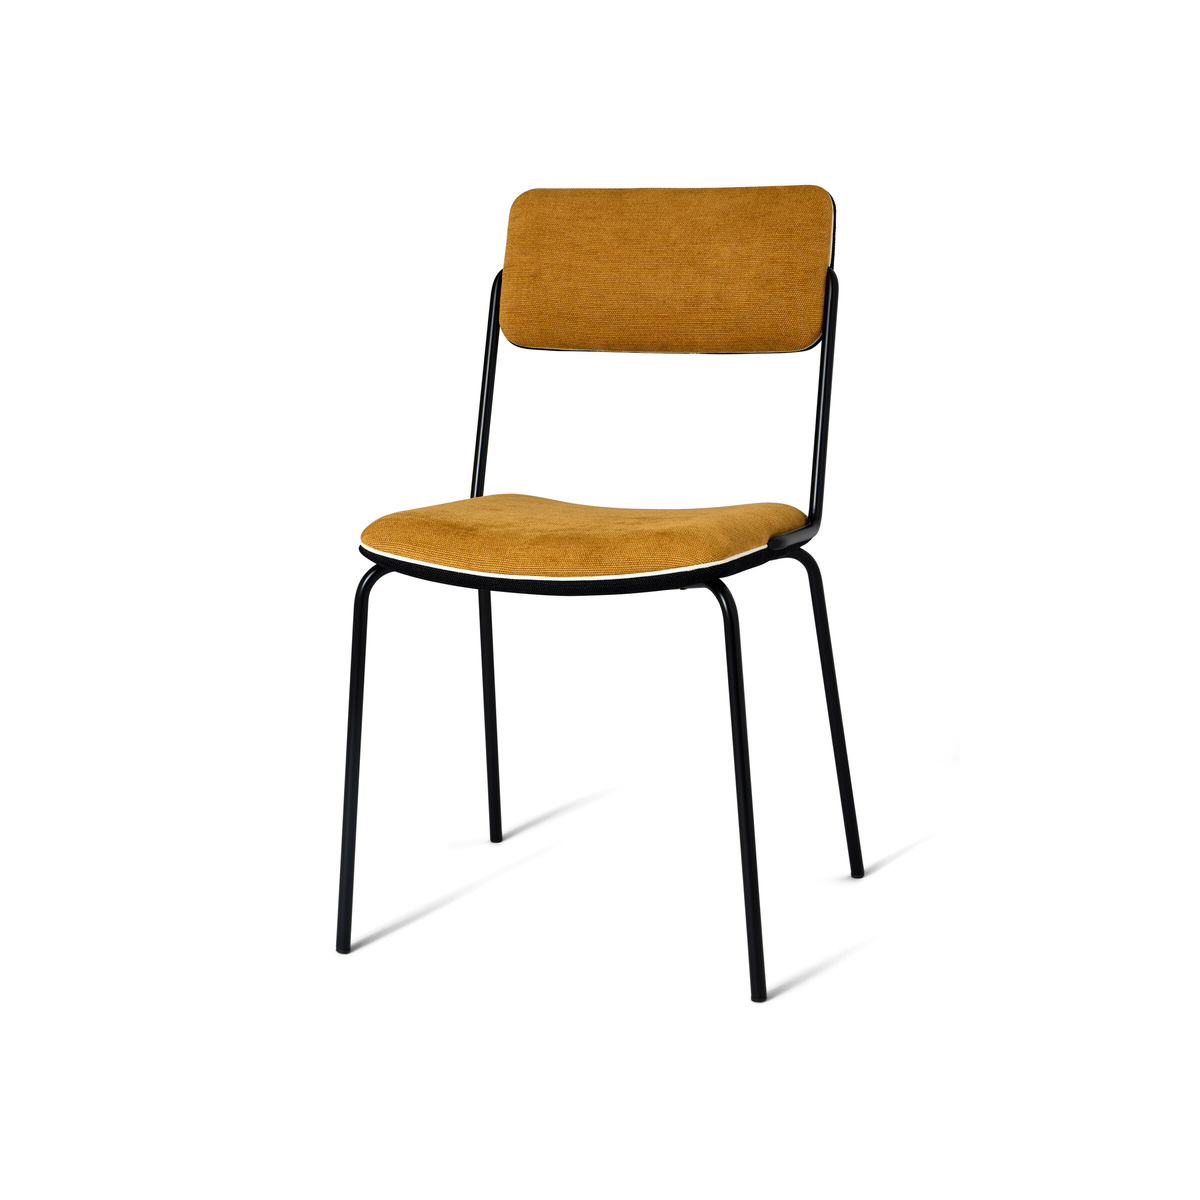 Chair Double Jeu, Ochre / Black - H85 x W51 x D43 cm - Cotton - image 1